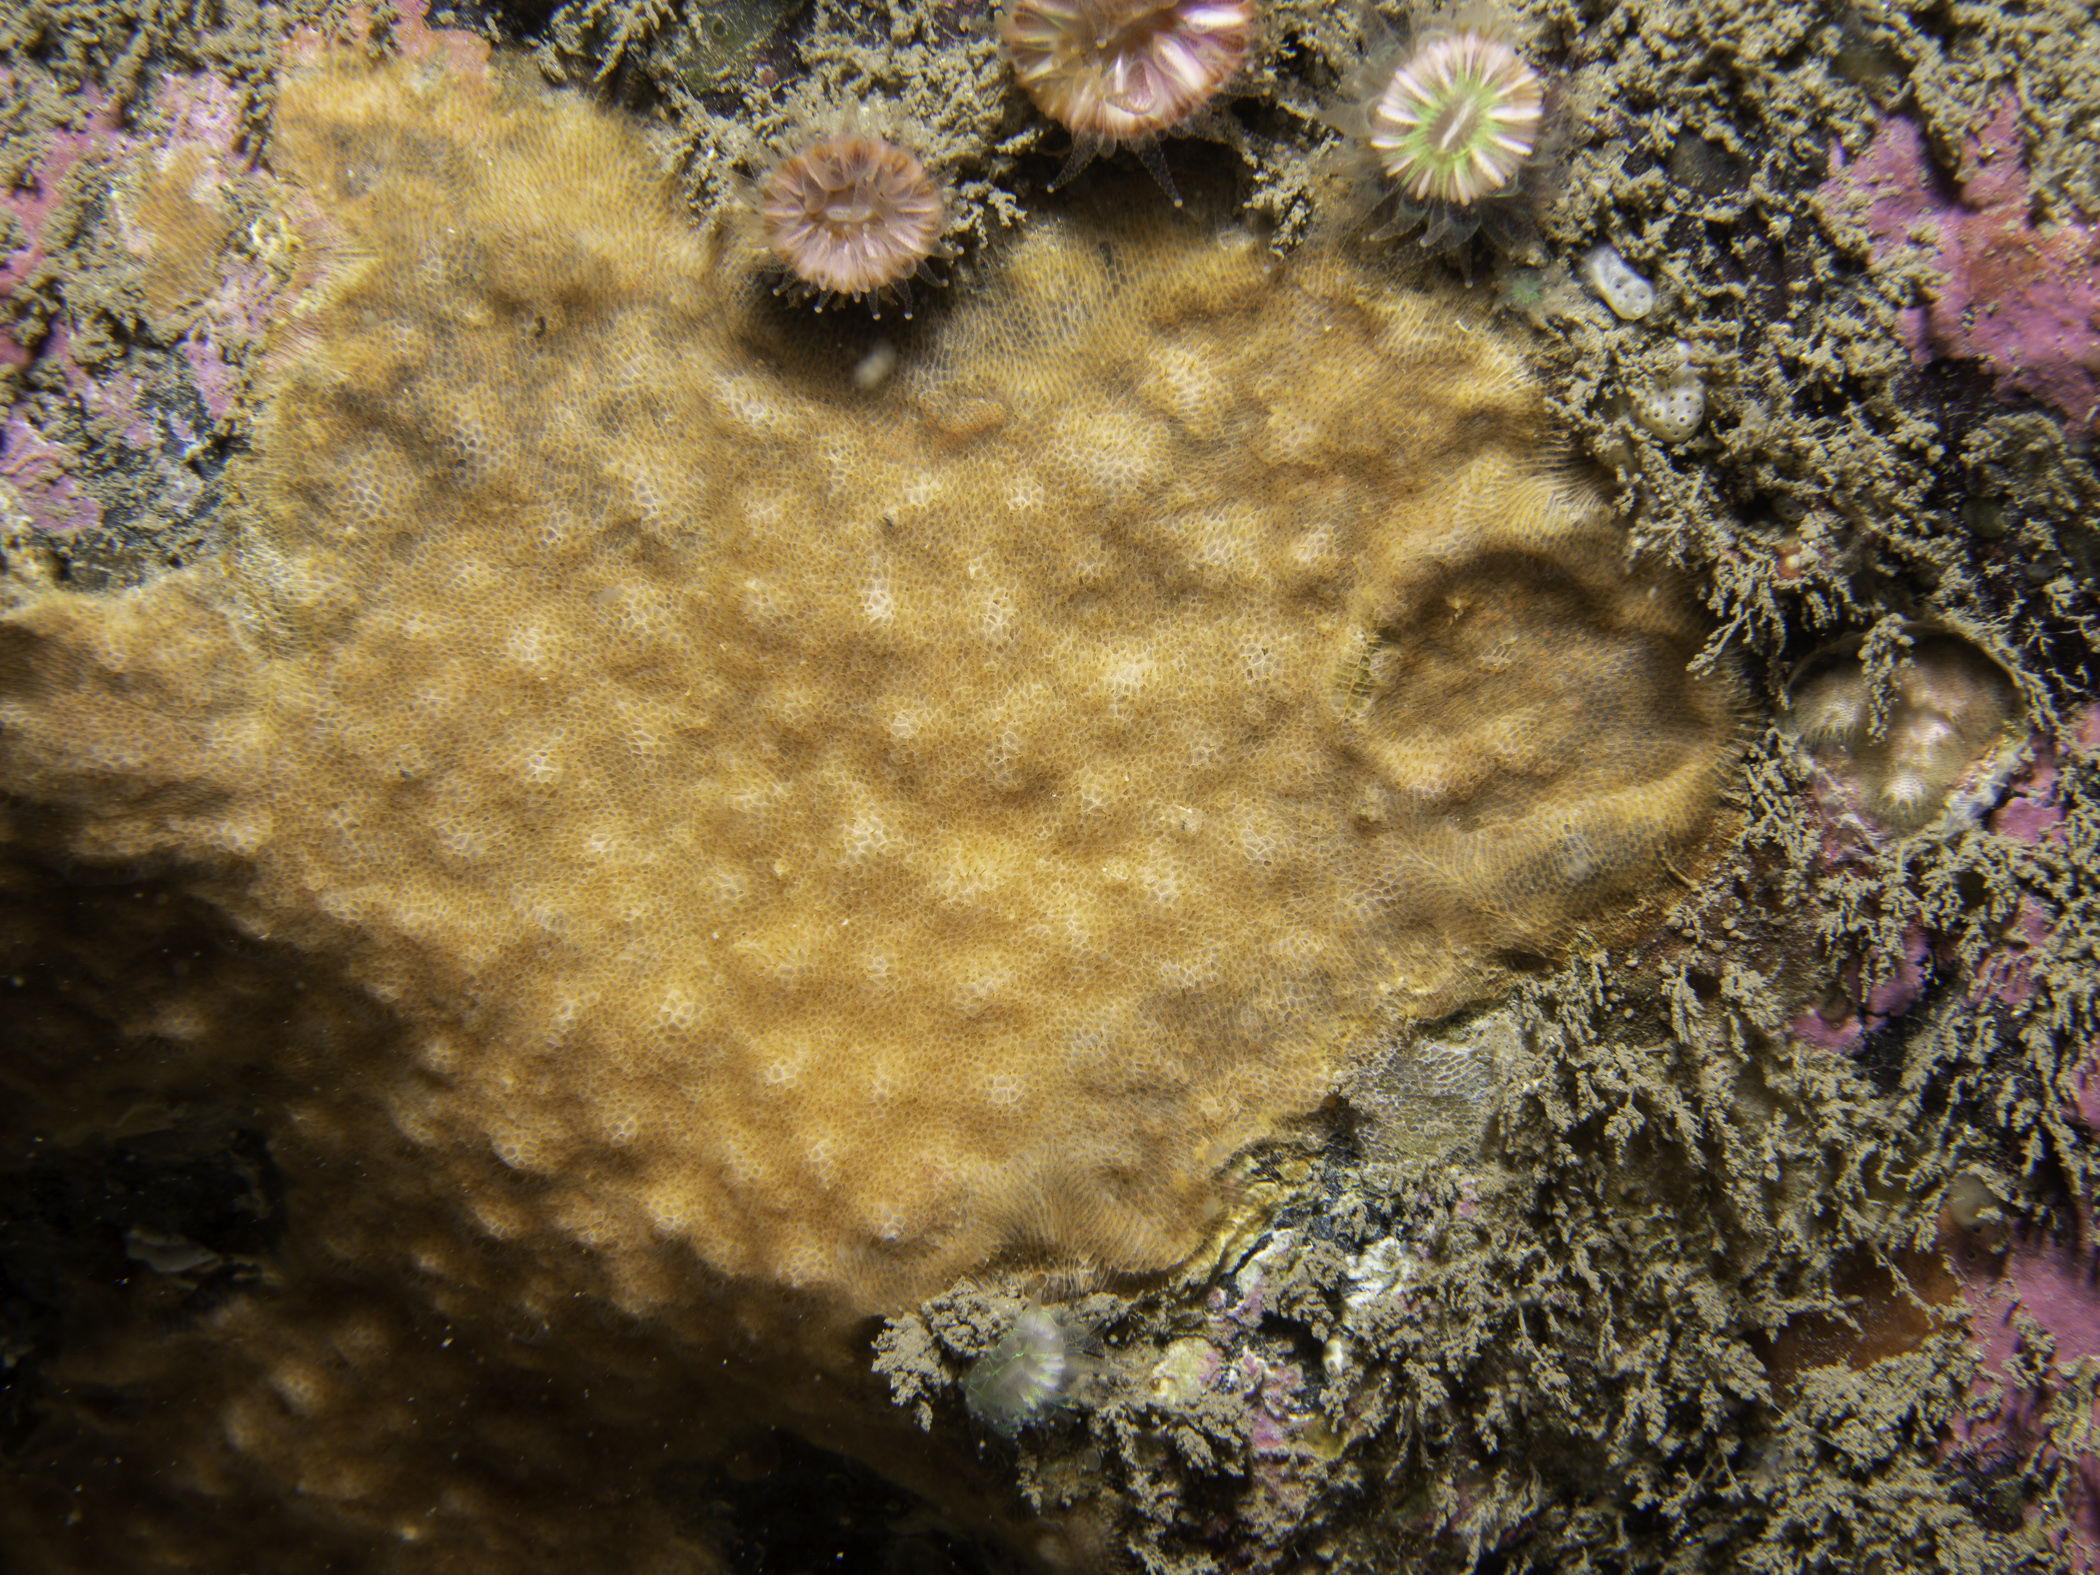 image: Parasmittina trispinosa. Sroanderrig, Rathlin Island.